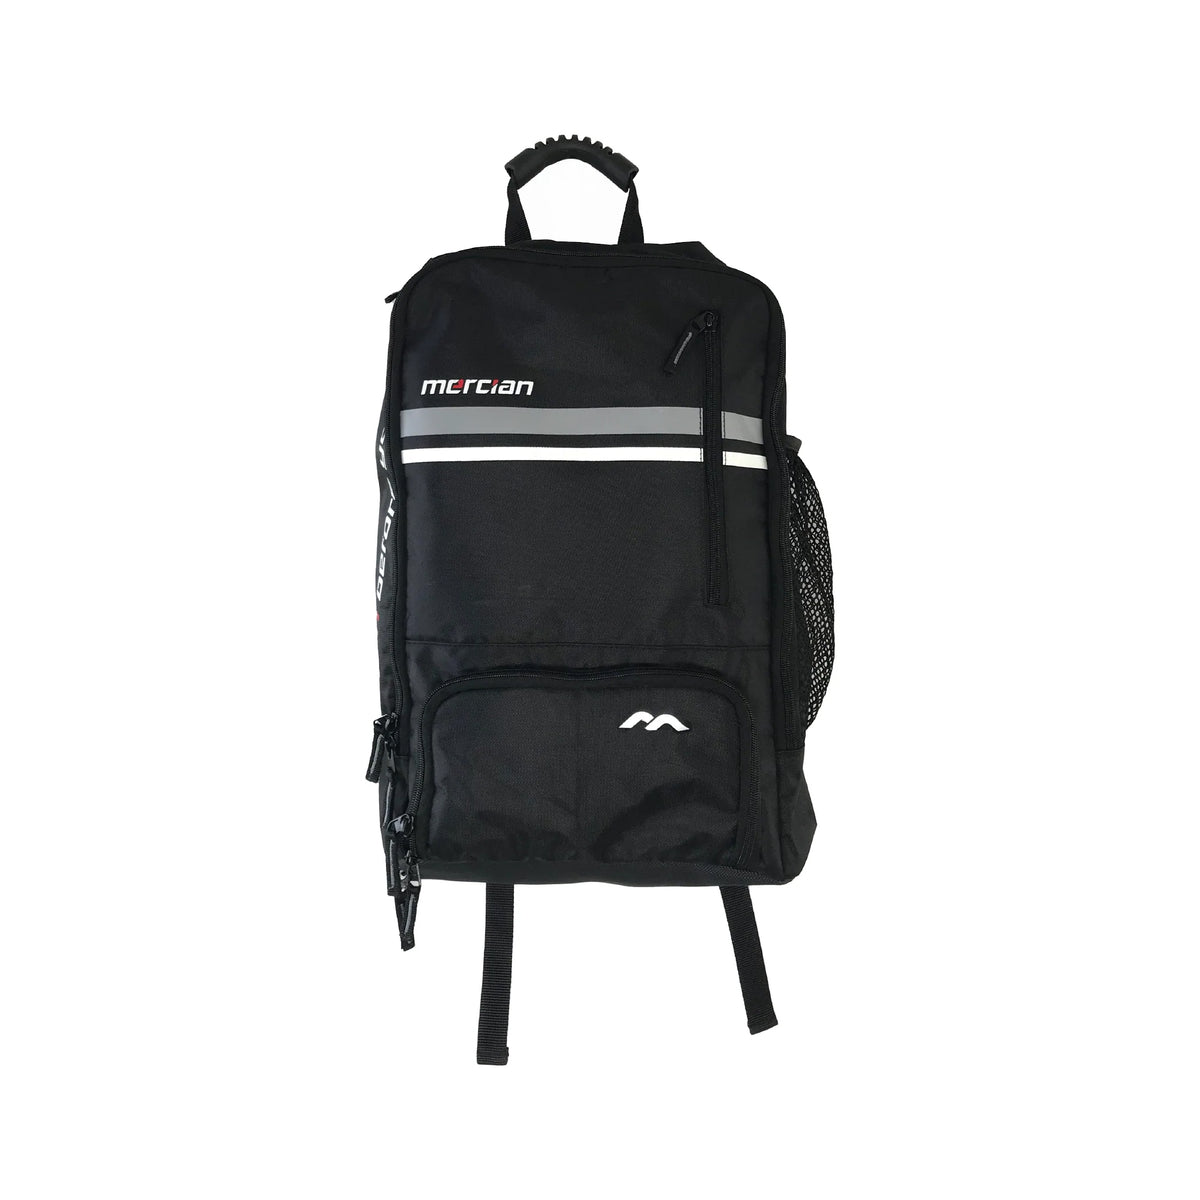 Mercian Genesis 5 Backpack: Black